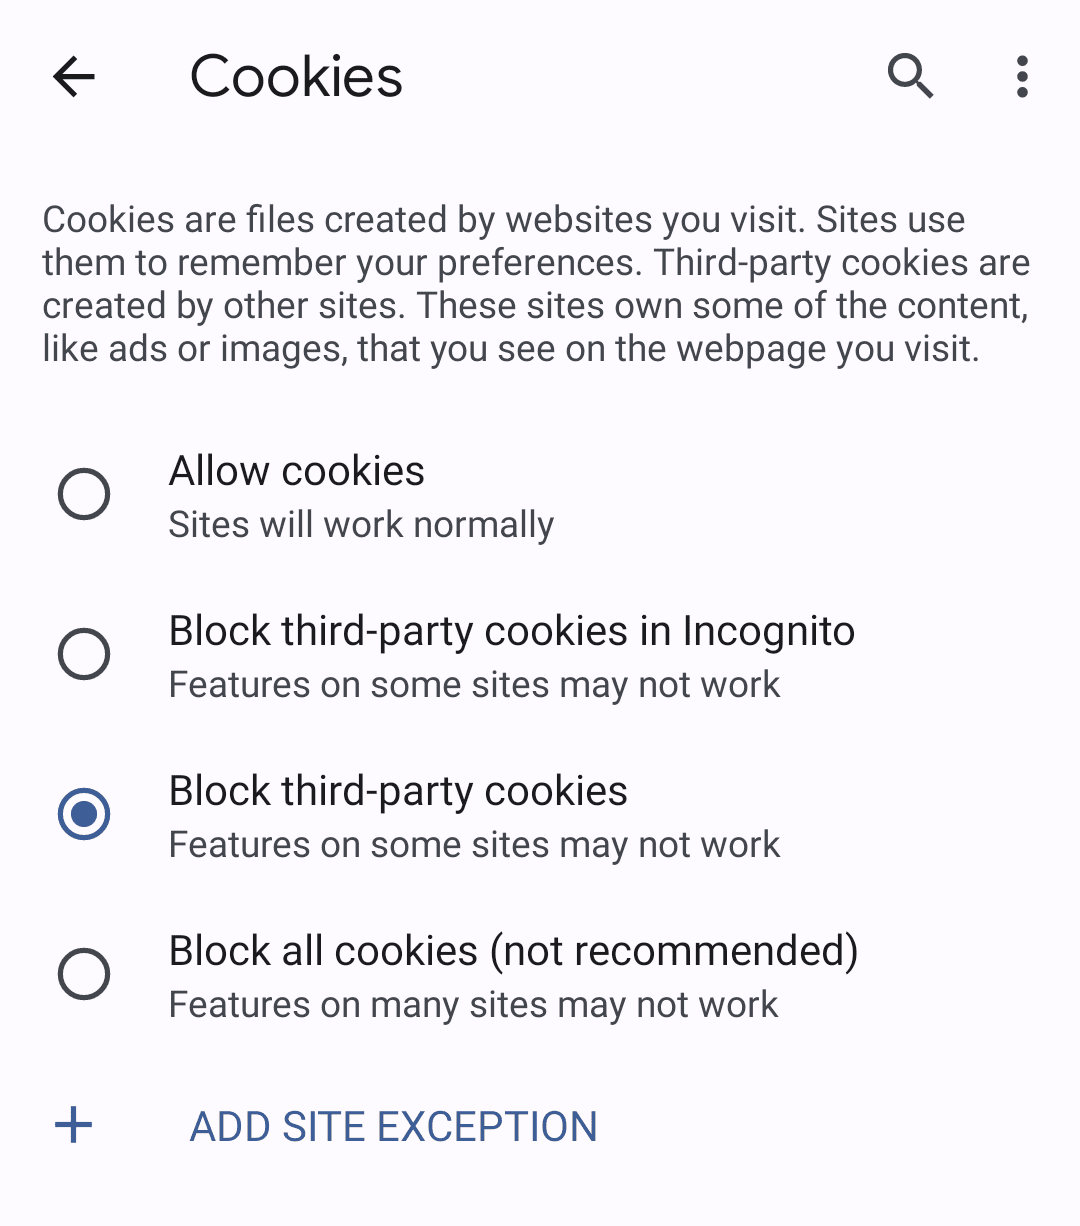 Sie können die Einstellung von Drittanbieter-Cookies simulieren, indem Sie Chrome so konfigurieren, dass sie blockiert werden.